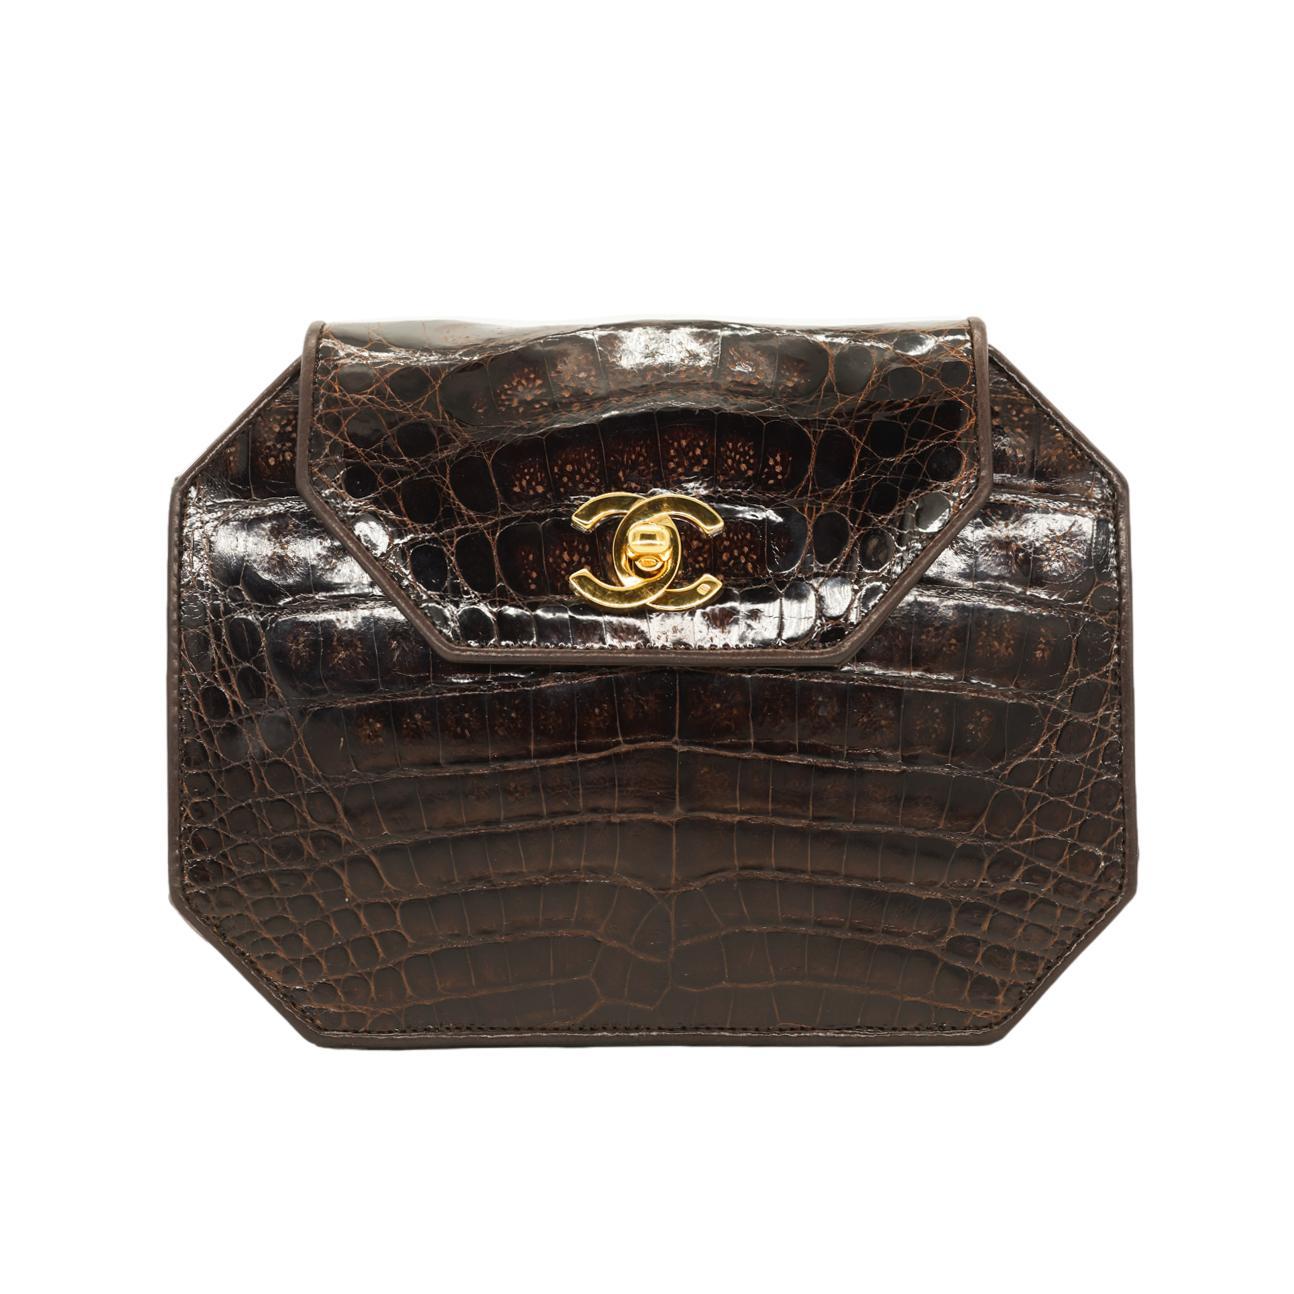 Chanel Achteckige Cross Body-Klappentasche aus braunem Alligatorleder mit Goldbeschlägen, 1989. Dieses außergewöhnliche und seltene Stück Chanel-Geschichte wurde zwischen 1989 und 1990 produziert und trägt die Seriennummer 